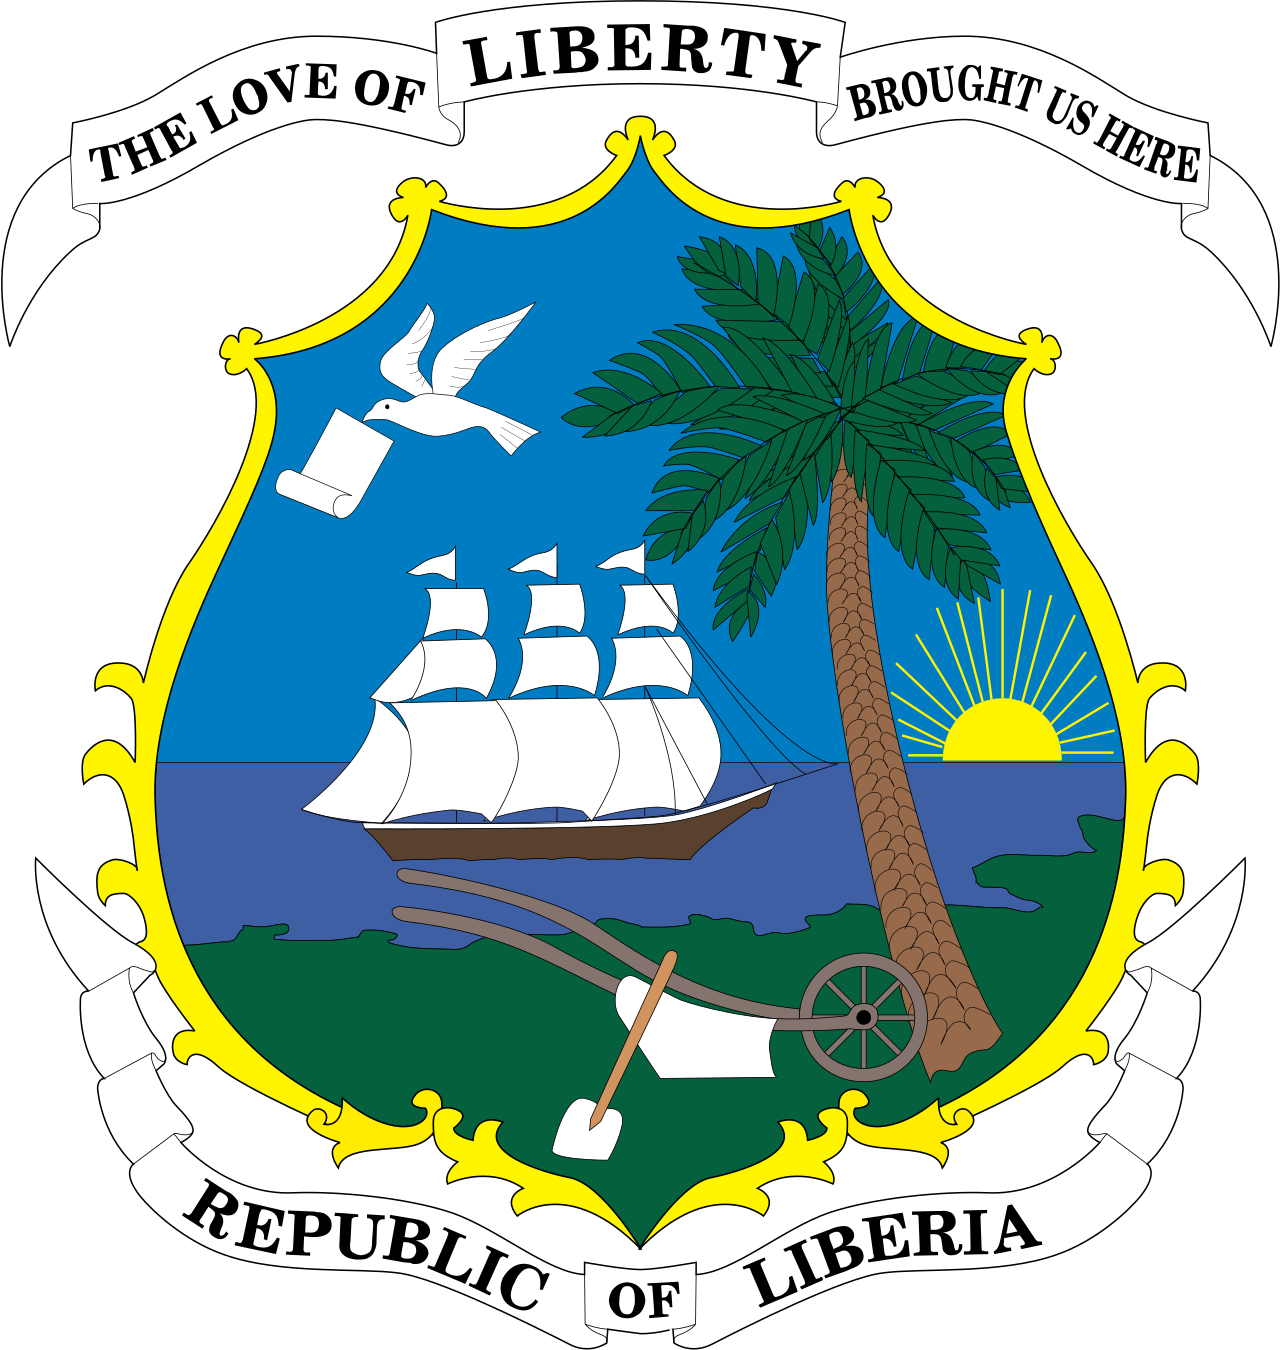 利比里亚的国旗和美国的星条旗一样，被称为非洲的小美国，国旗是怎么来的？